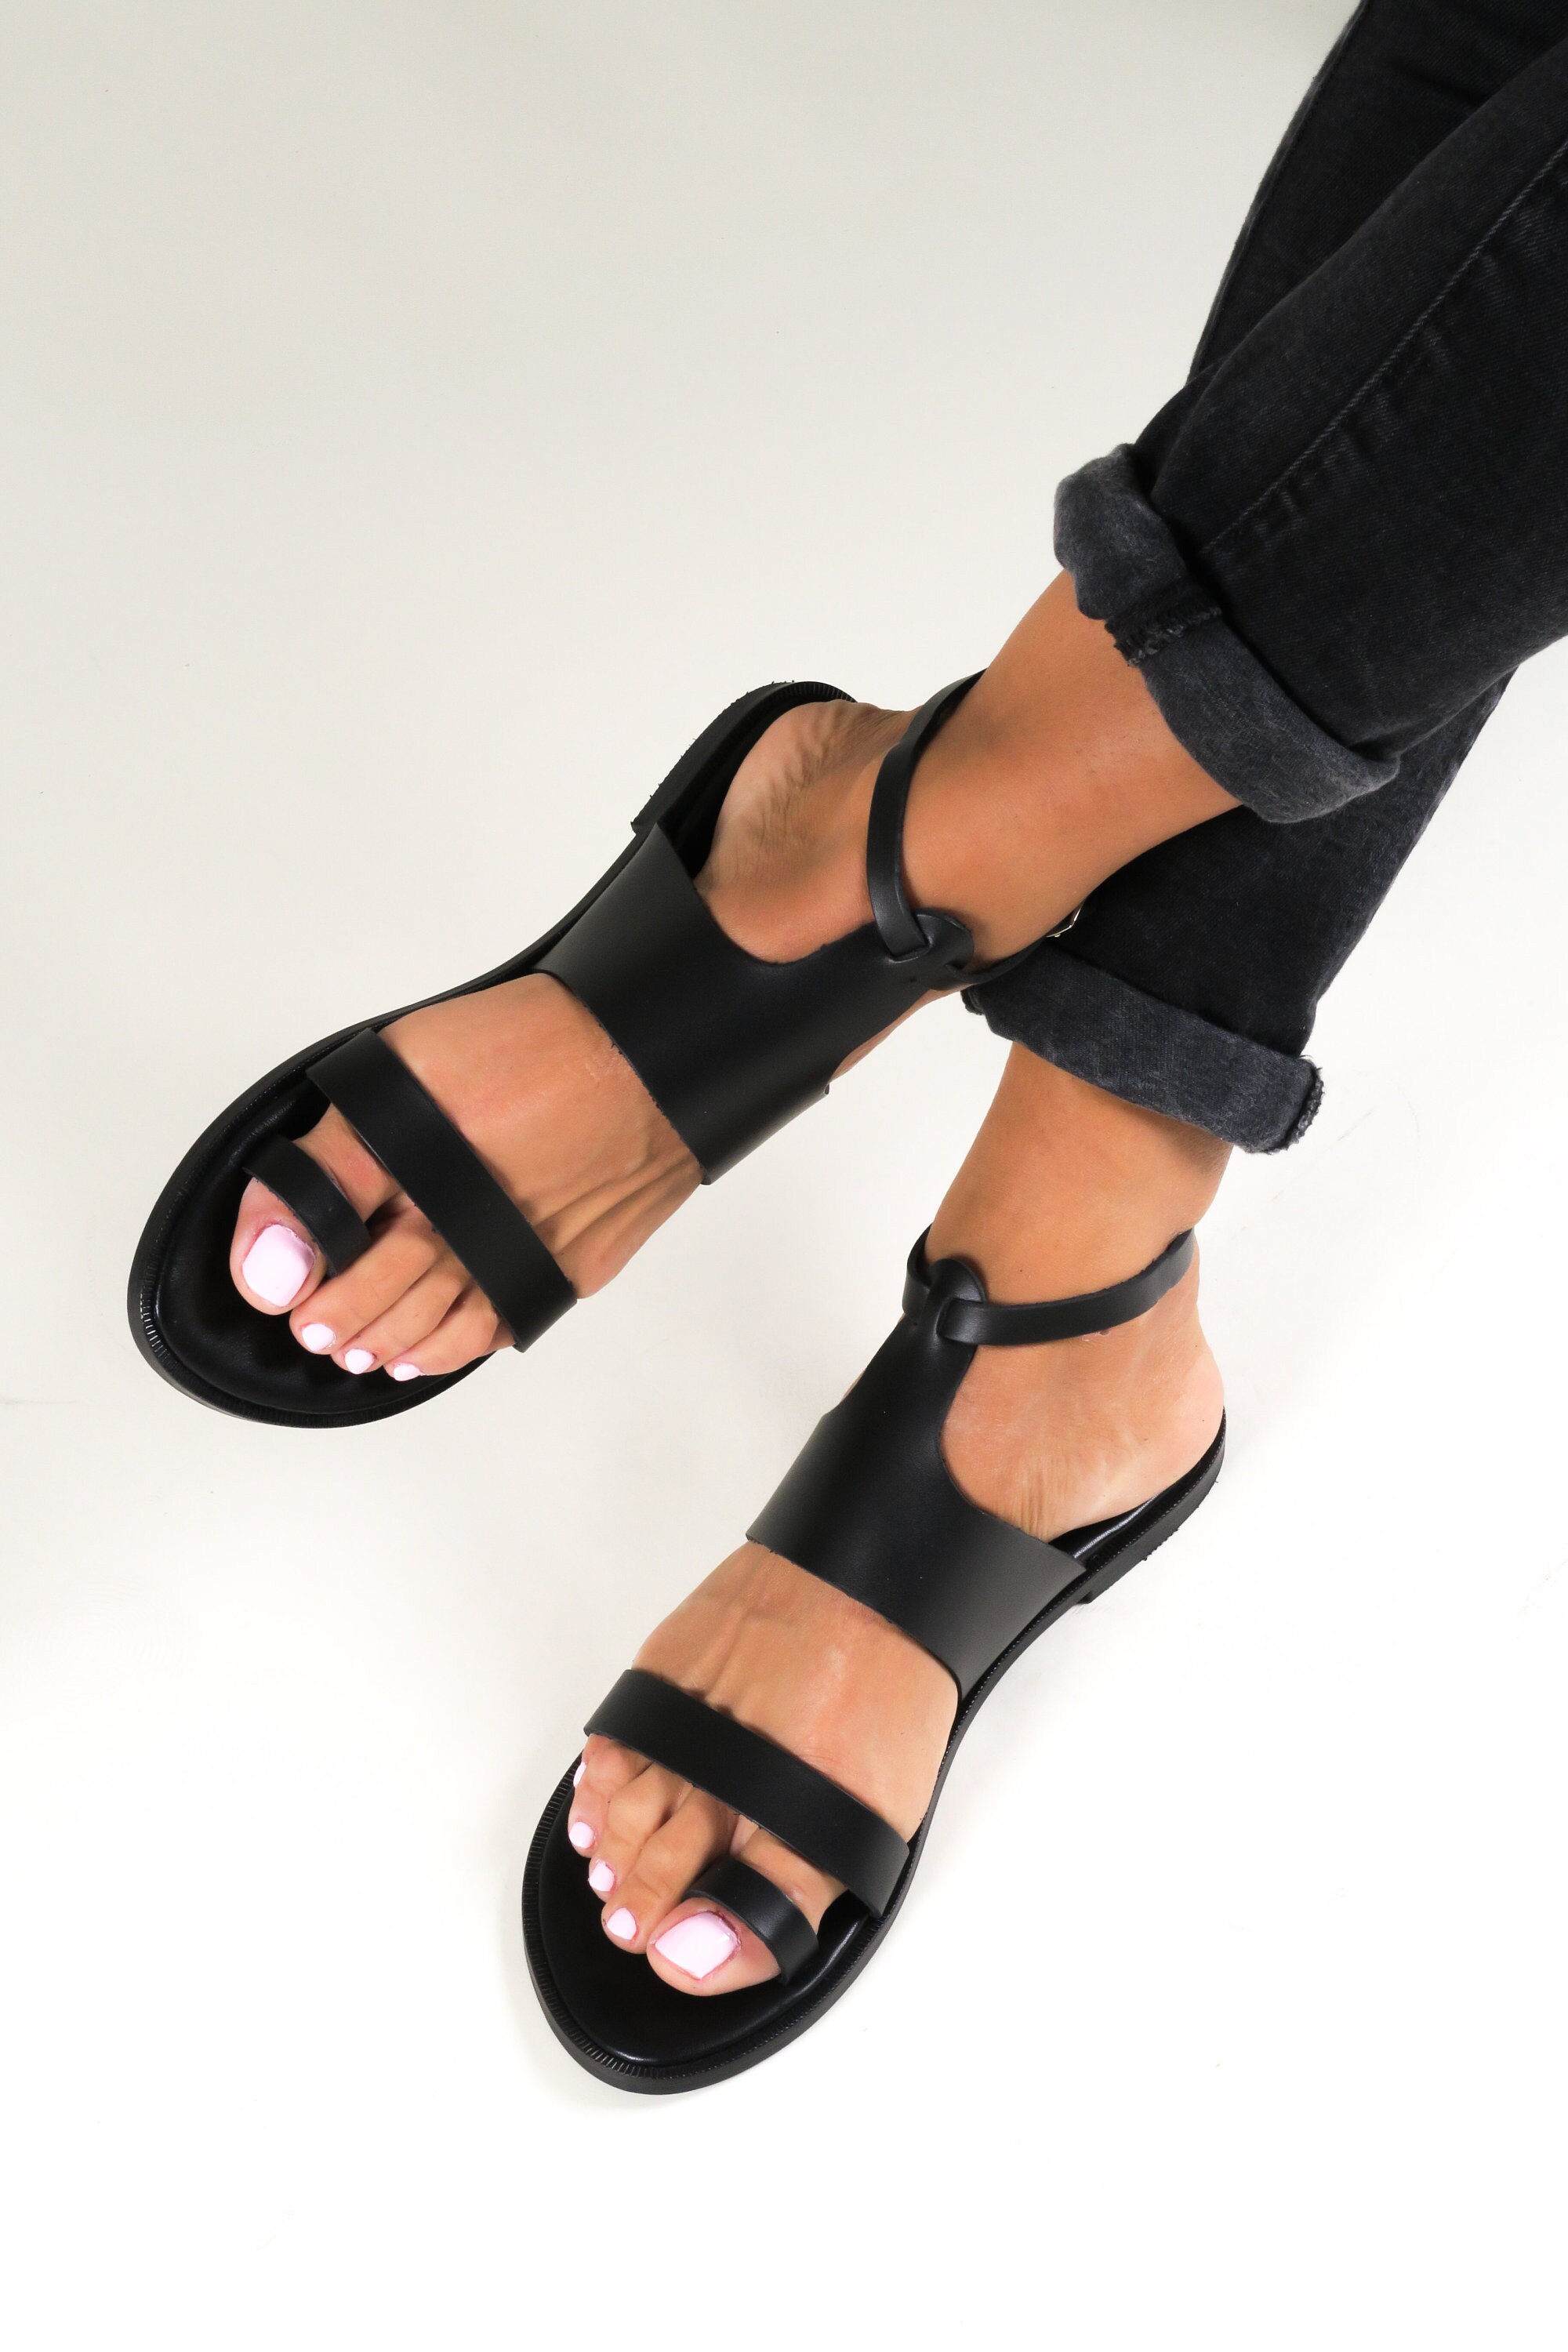 Greek Sandals for Women, Leather Gladiator Sandals, Sandales Grecques ...